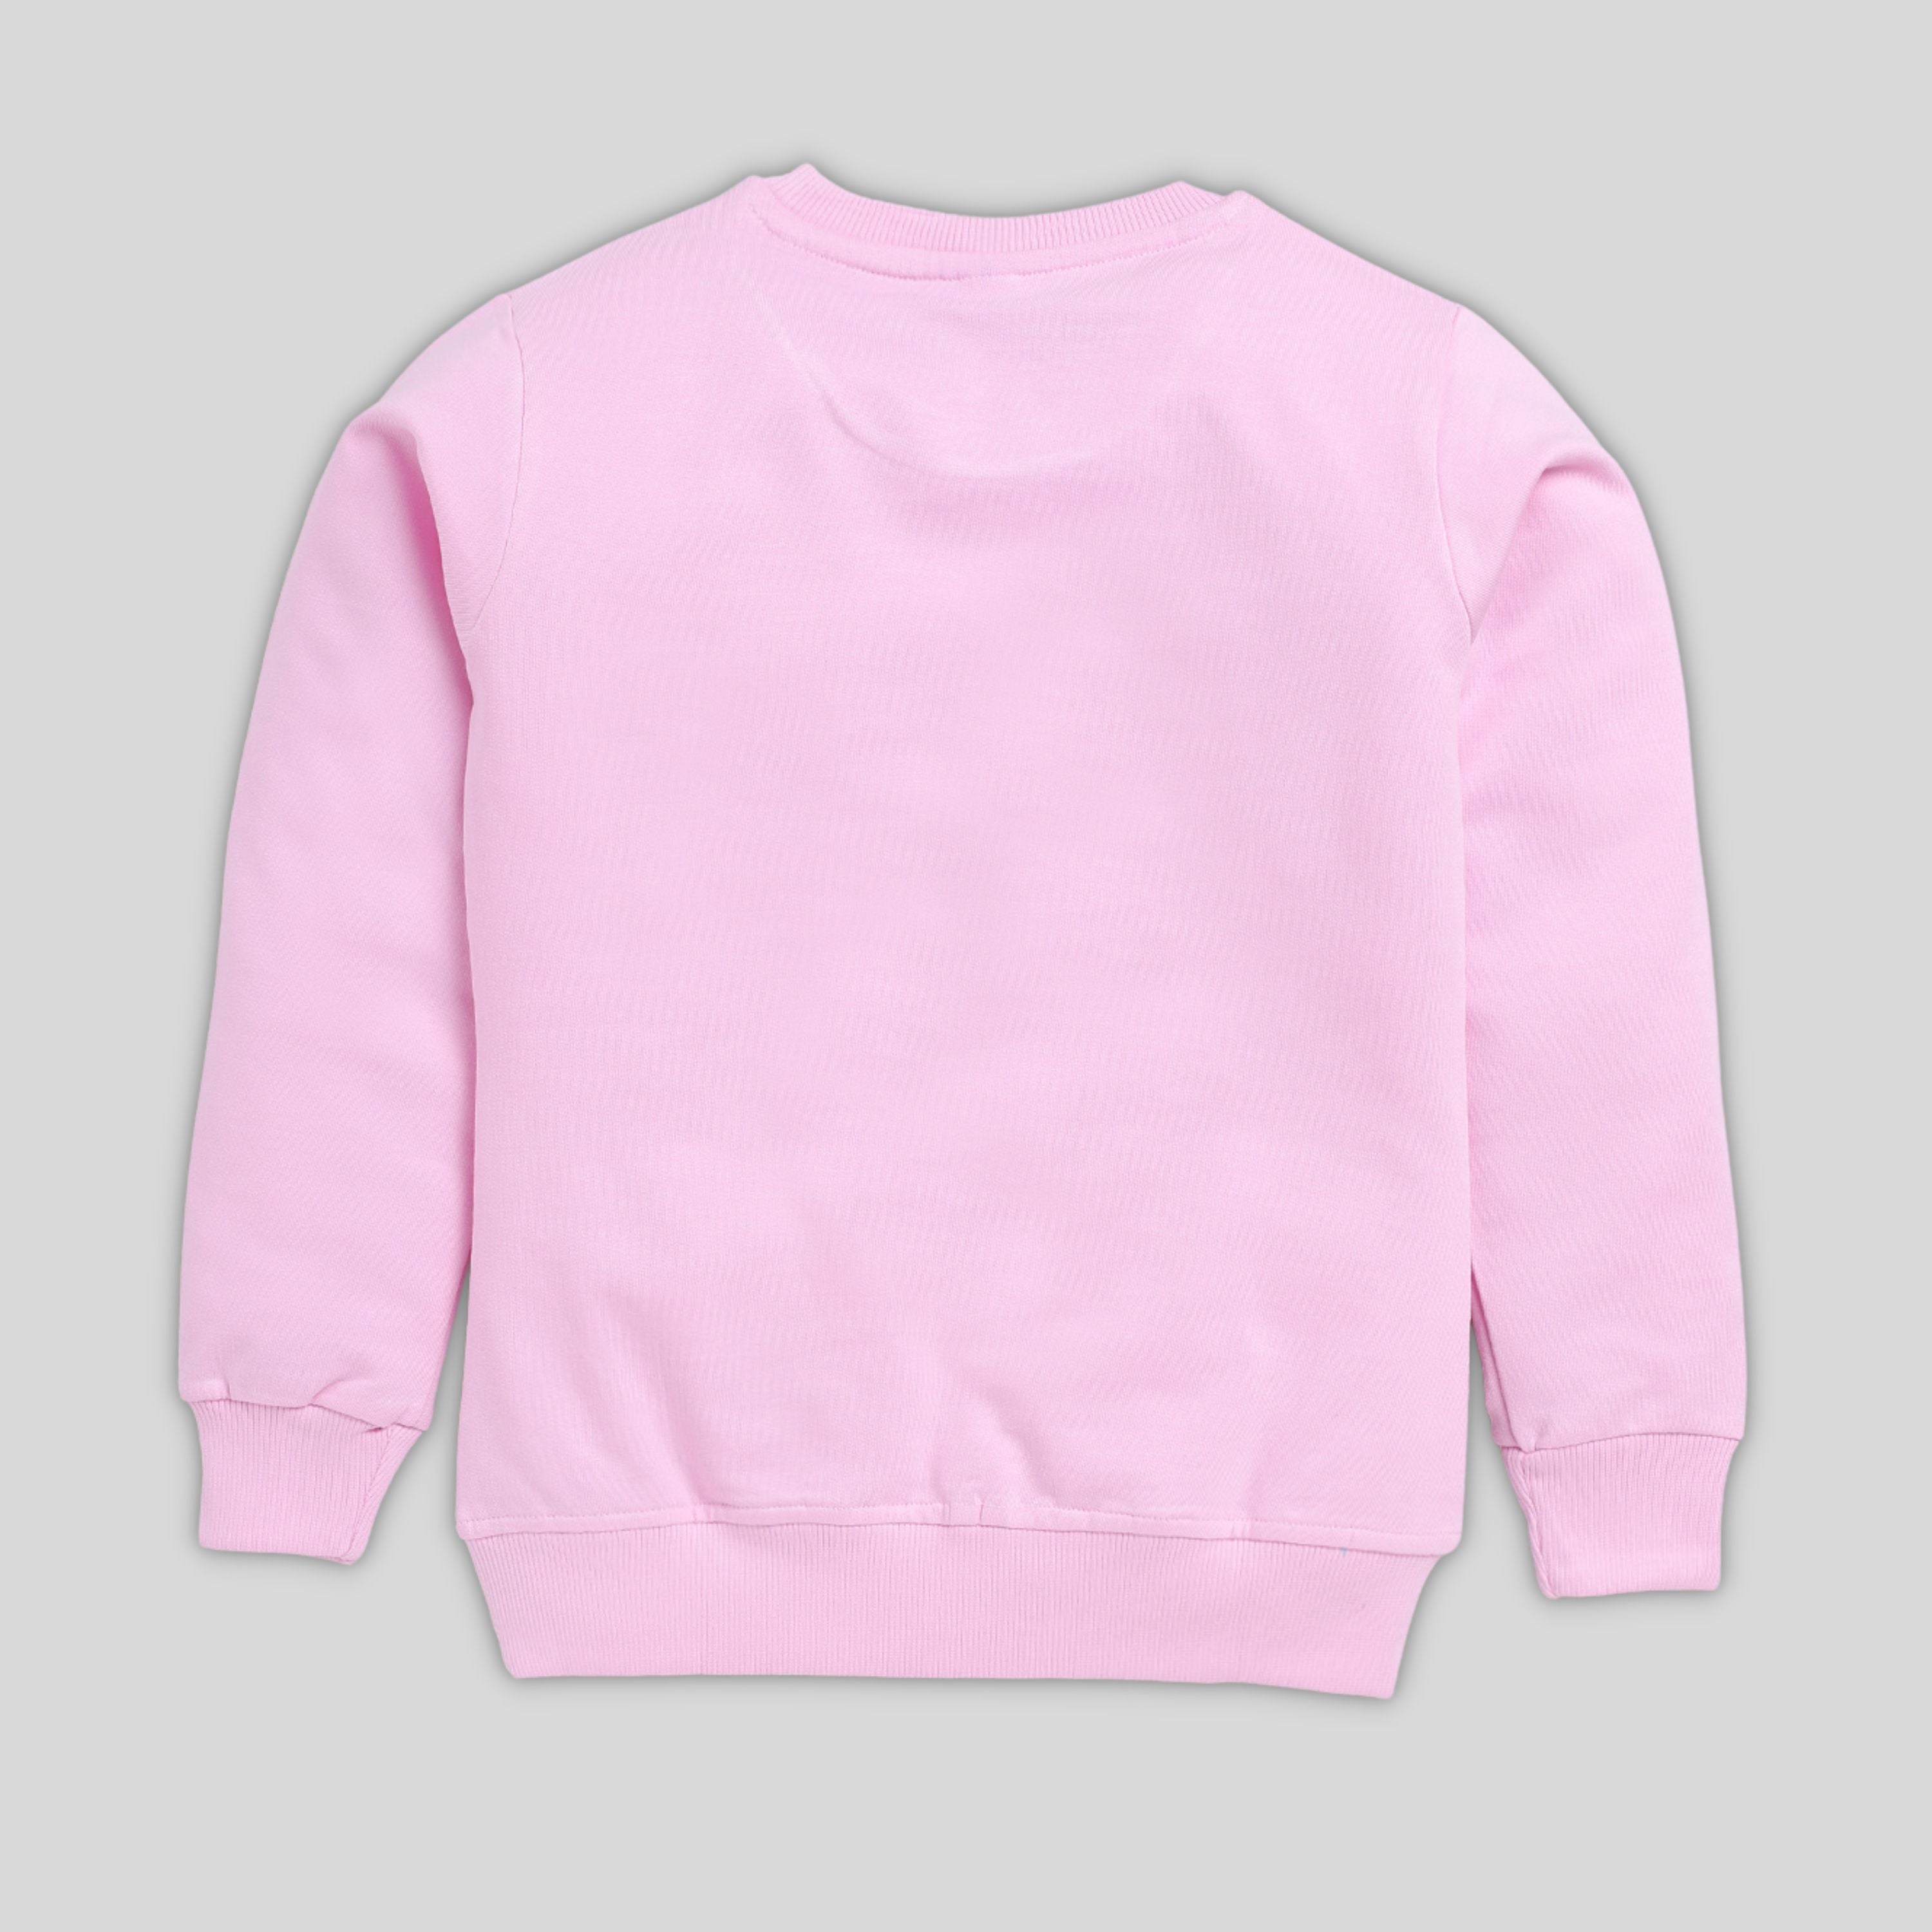 Printed Sweatshirt For Girl- Navy